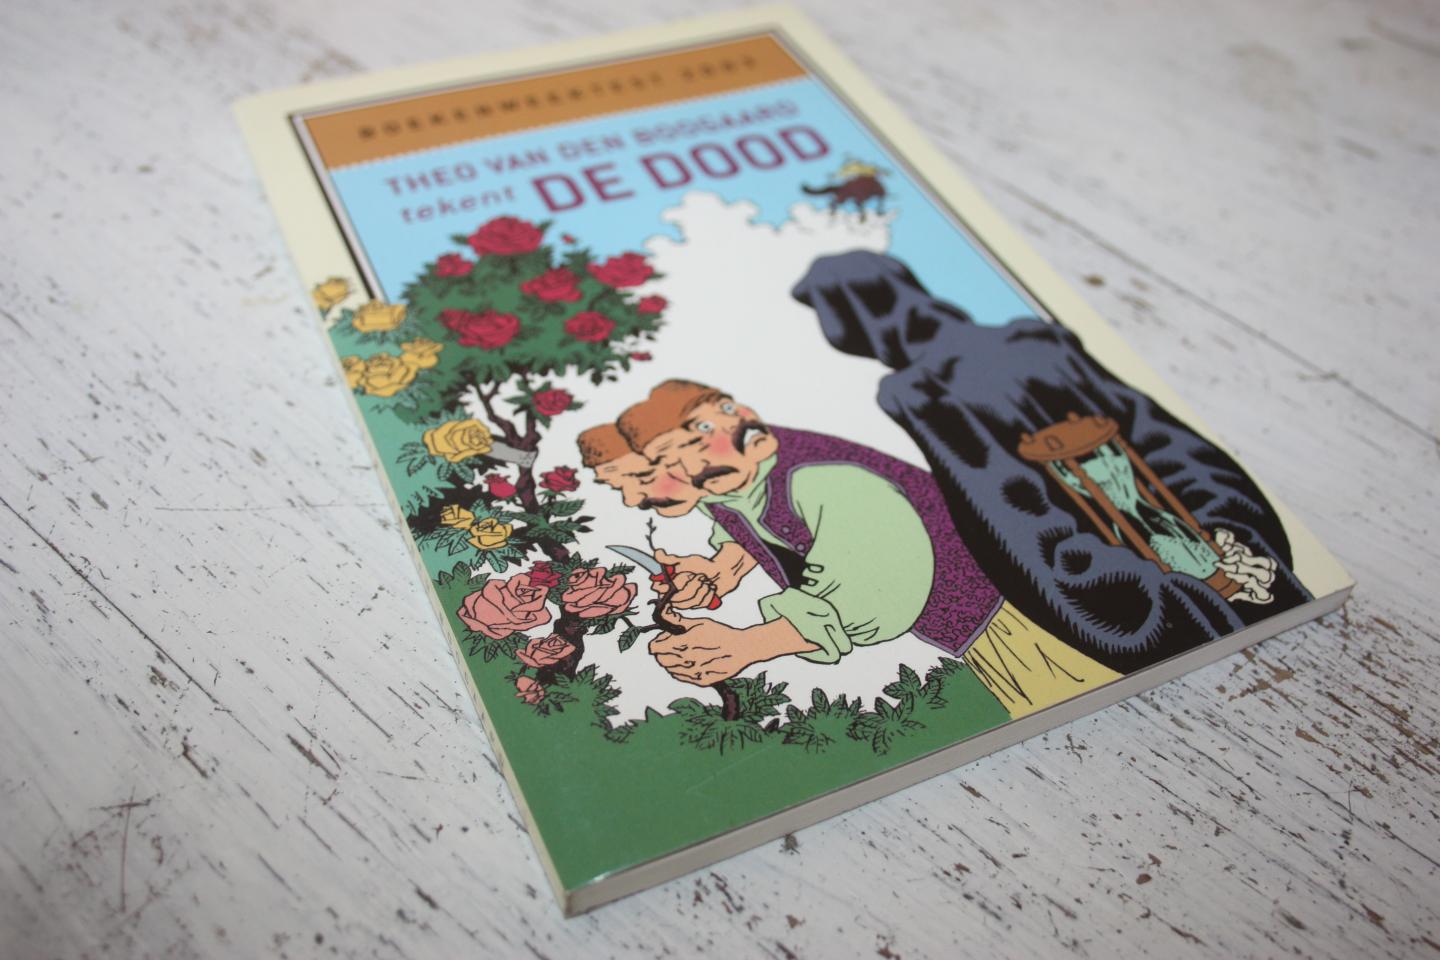 Boogaard van den Theo - Theo van den Boogaard tekent DE DOOD